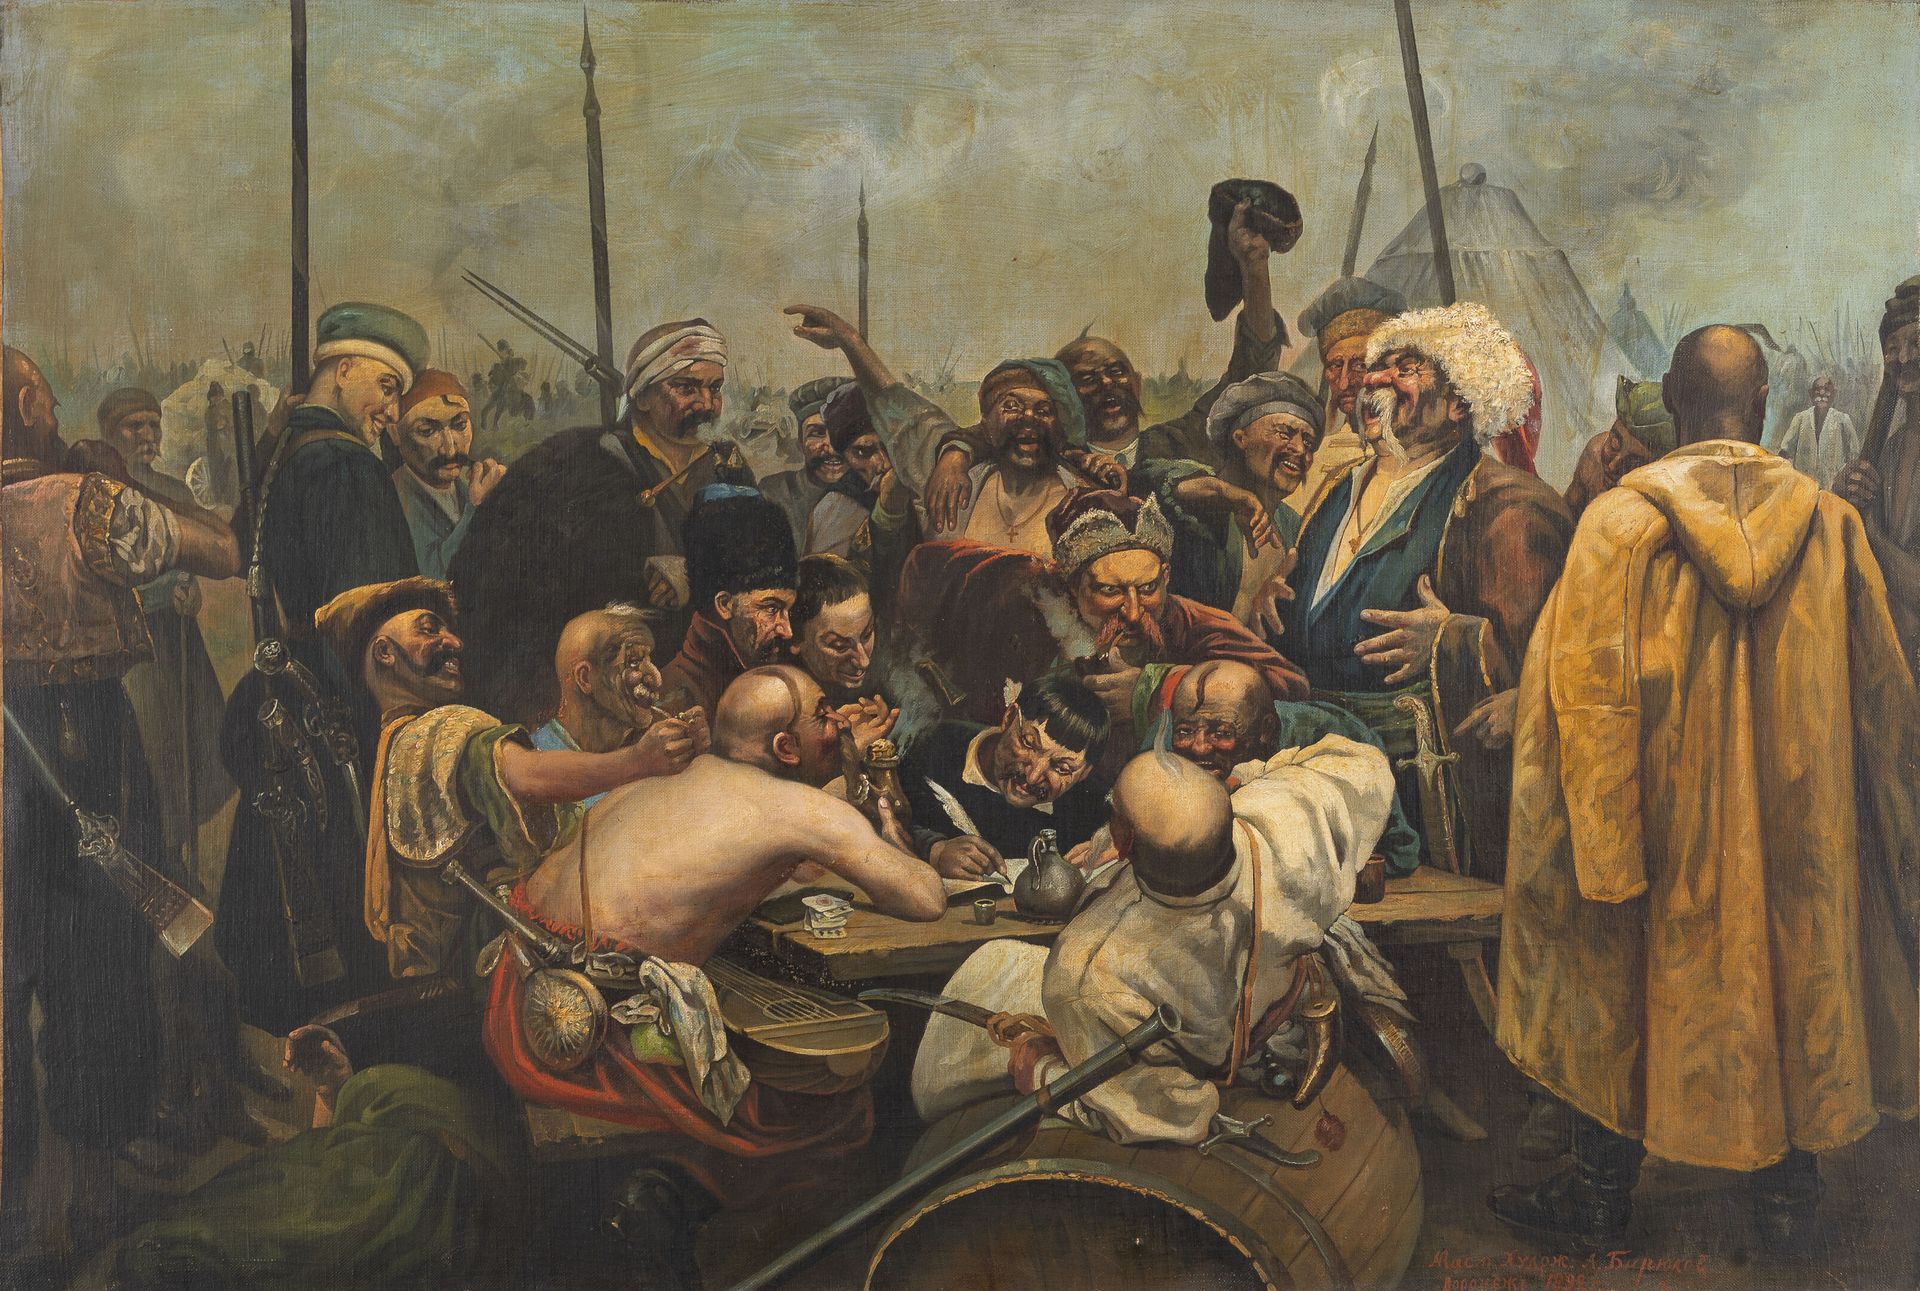 D'après Ilya REPINE (1844-1930) 扎波罗格哥萨克人给土耳其苏丹写了一封信。

布面油画。

69 x 104厘米。

略有磨损。